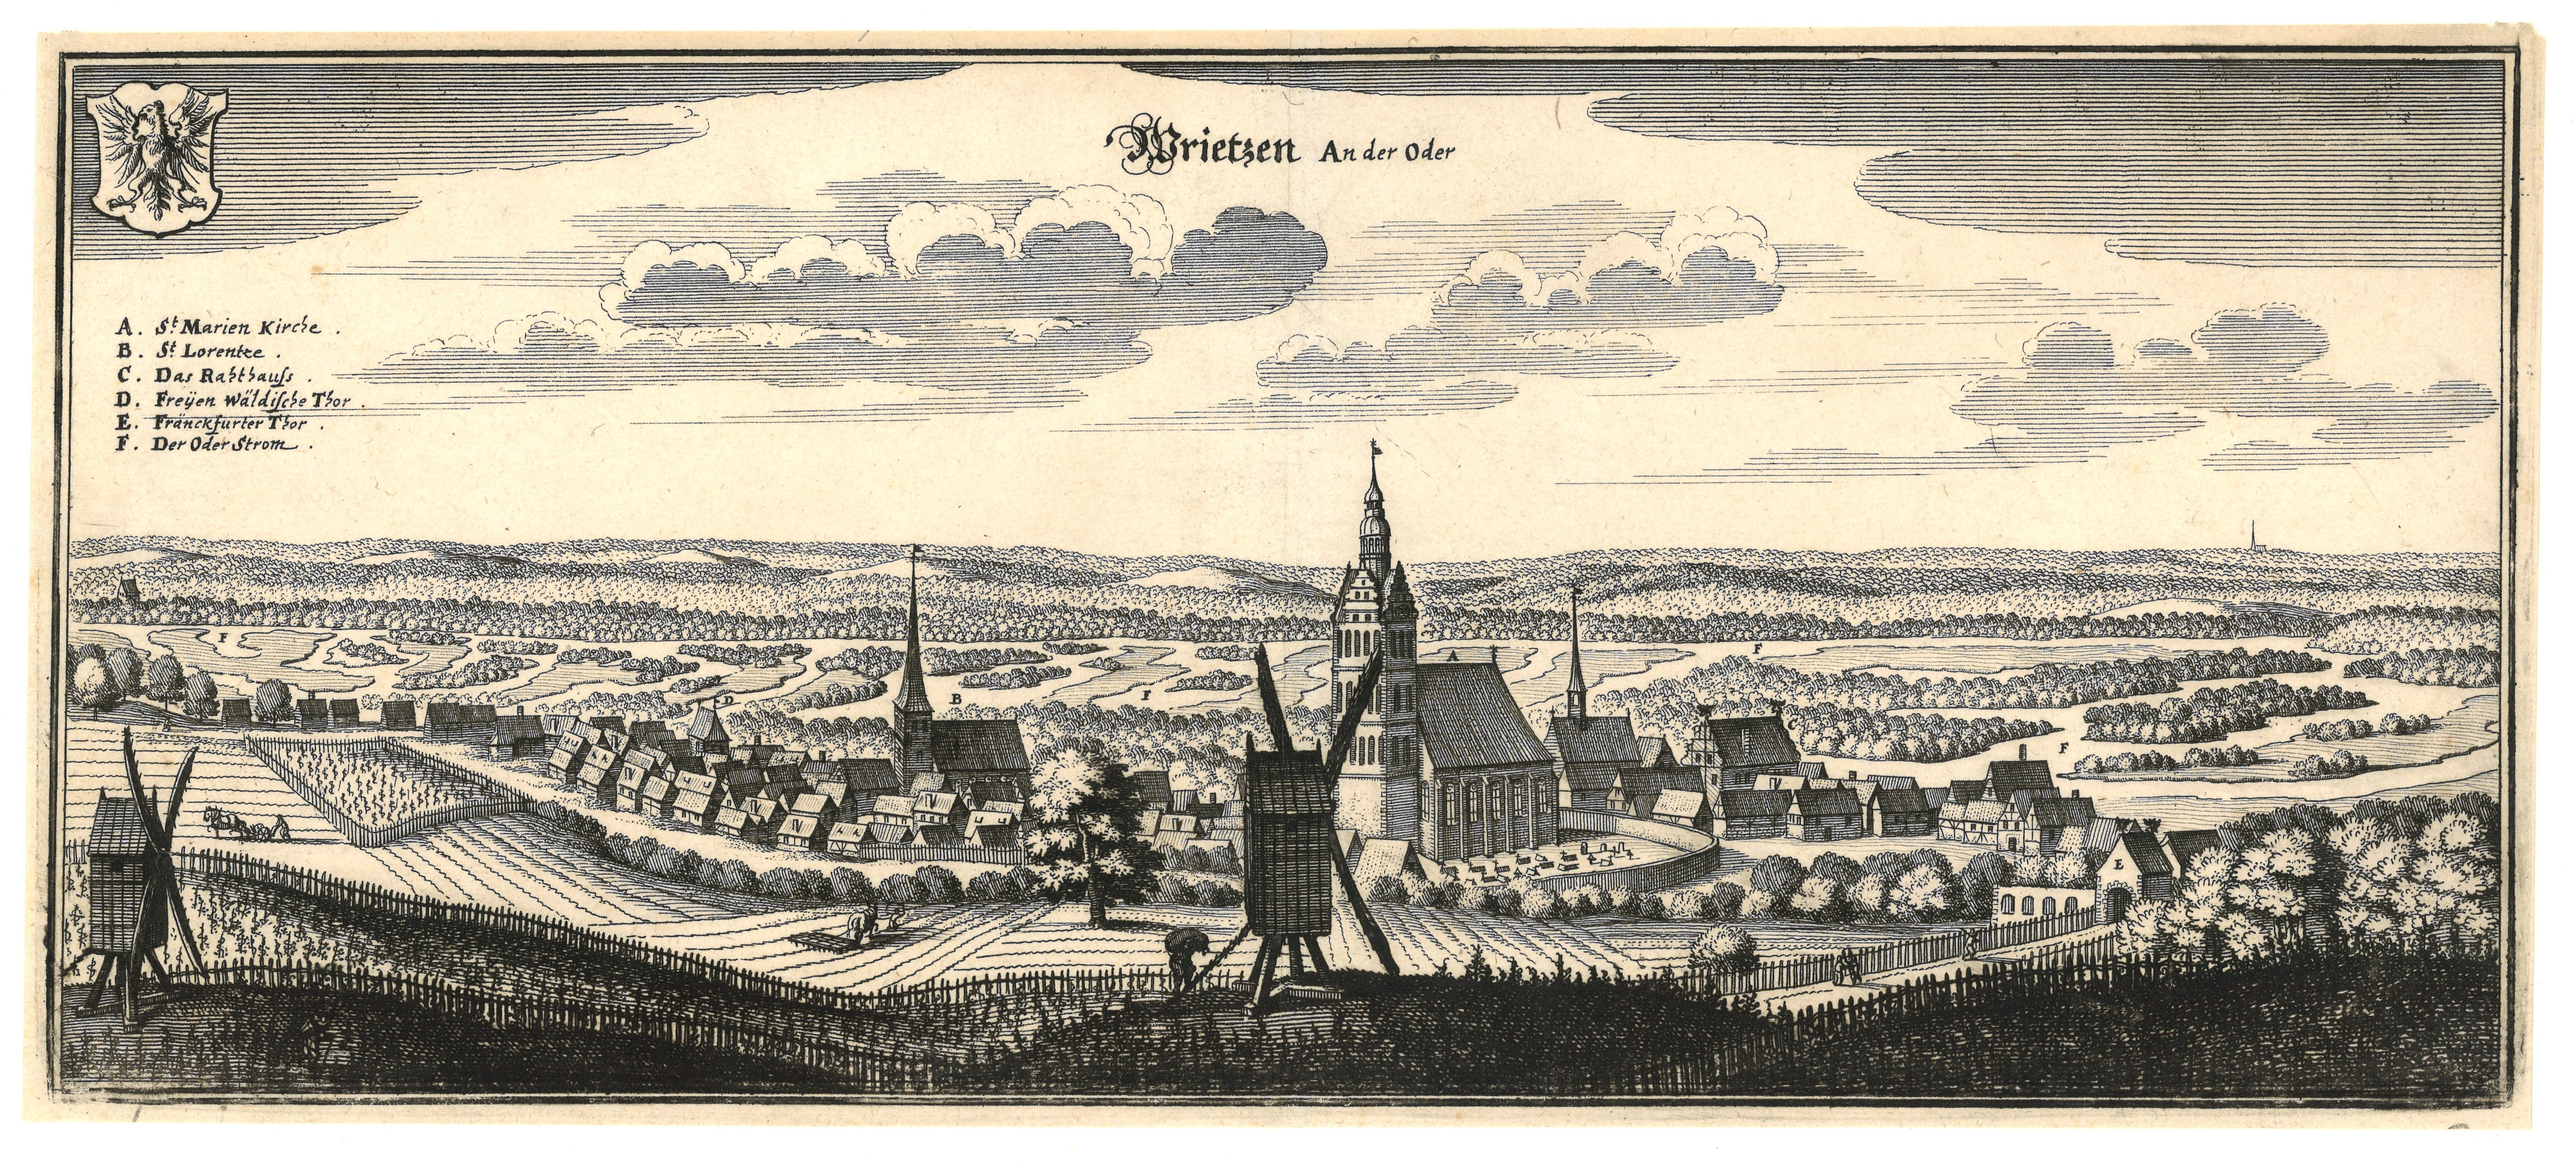 Wriezen (Oder): Ansicht der Stadt von Südwesten (Landesgeschichtliche Vereinigung für die Mark Brandenburg e.V., Archiv CC BY)